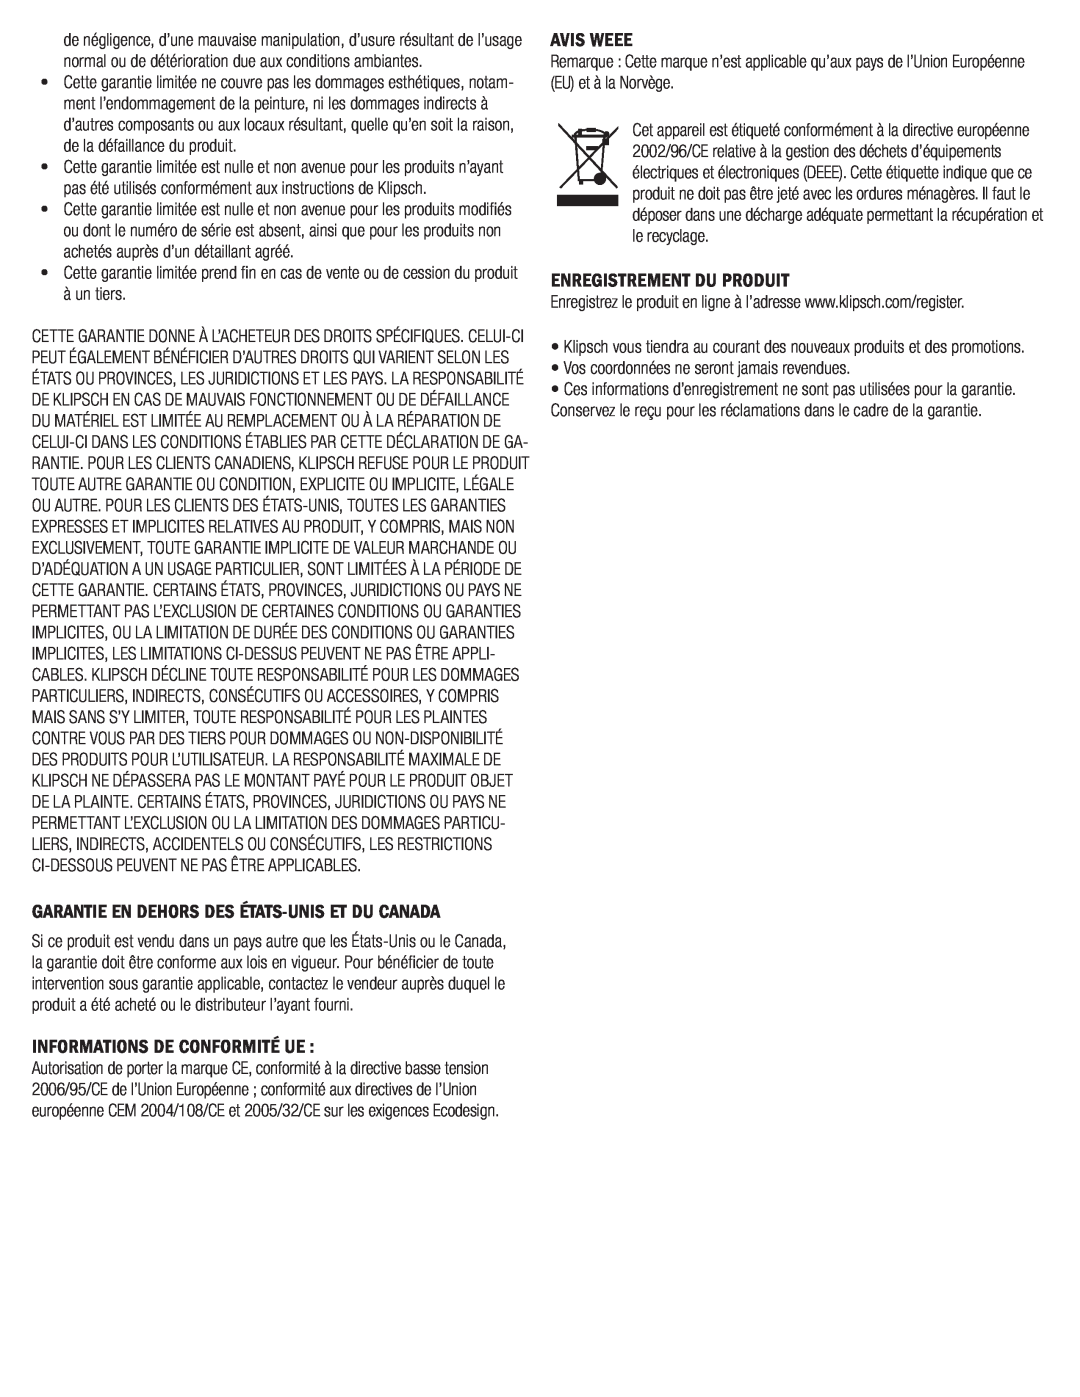 Klipsch SYNERGY-F-30 owner manual Informations De Conformité Ue, Avis Weee, Enregistrement Du Produit 